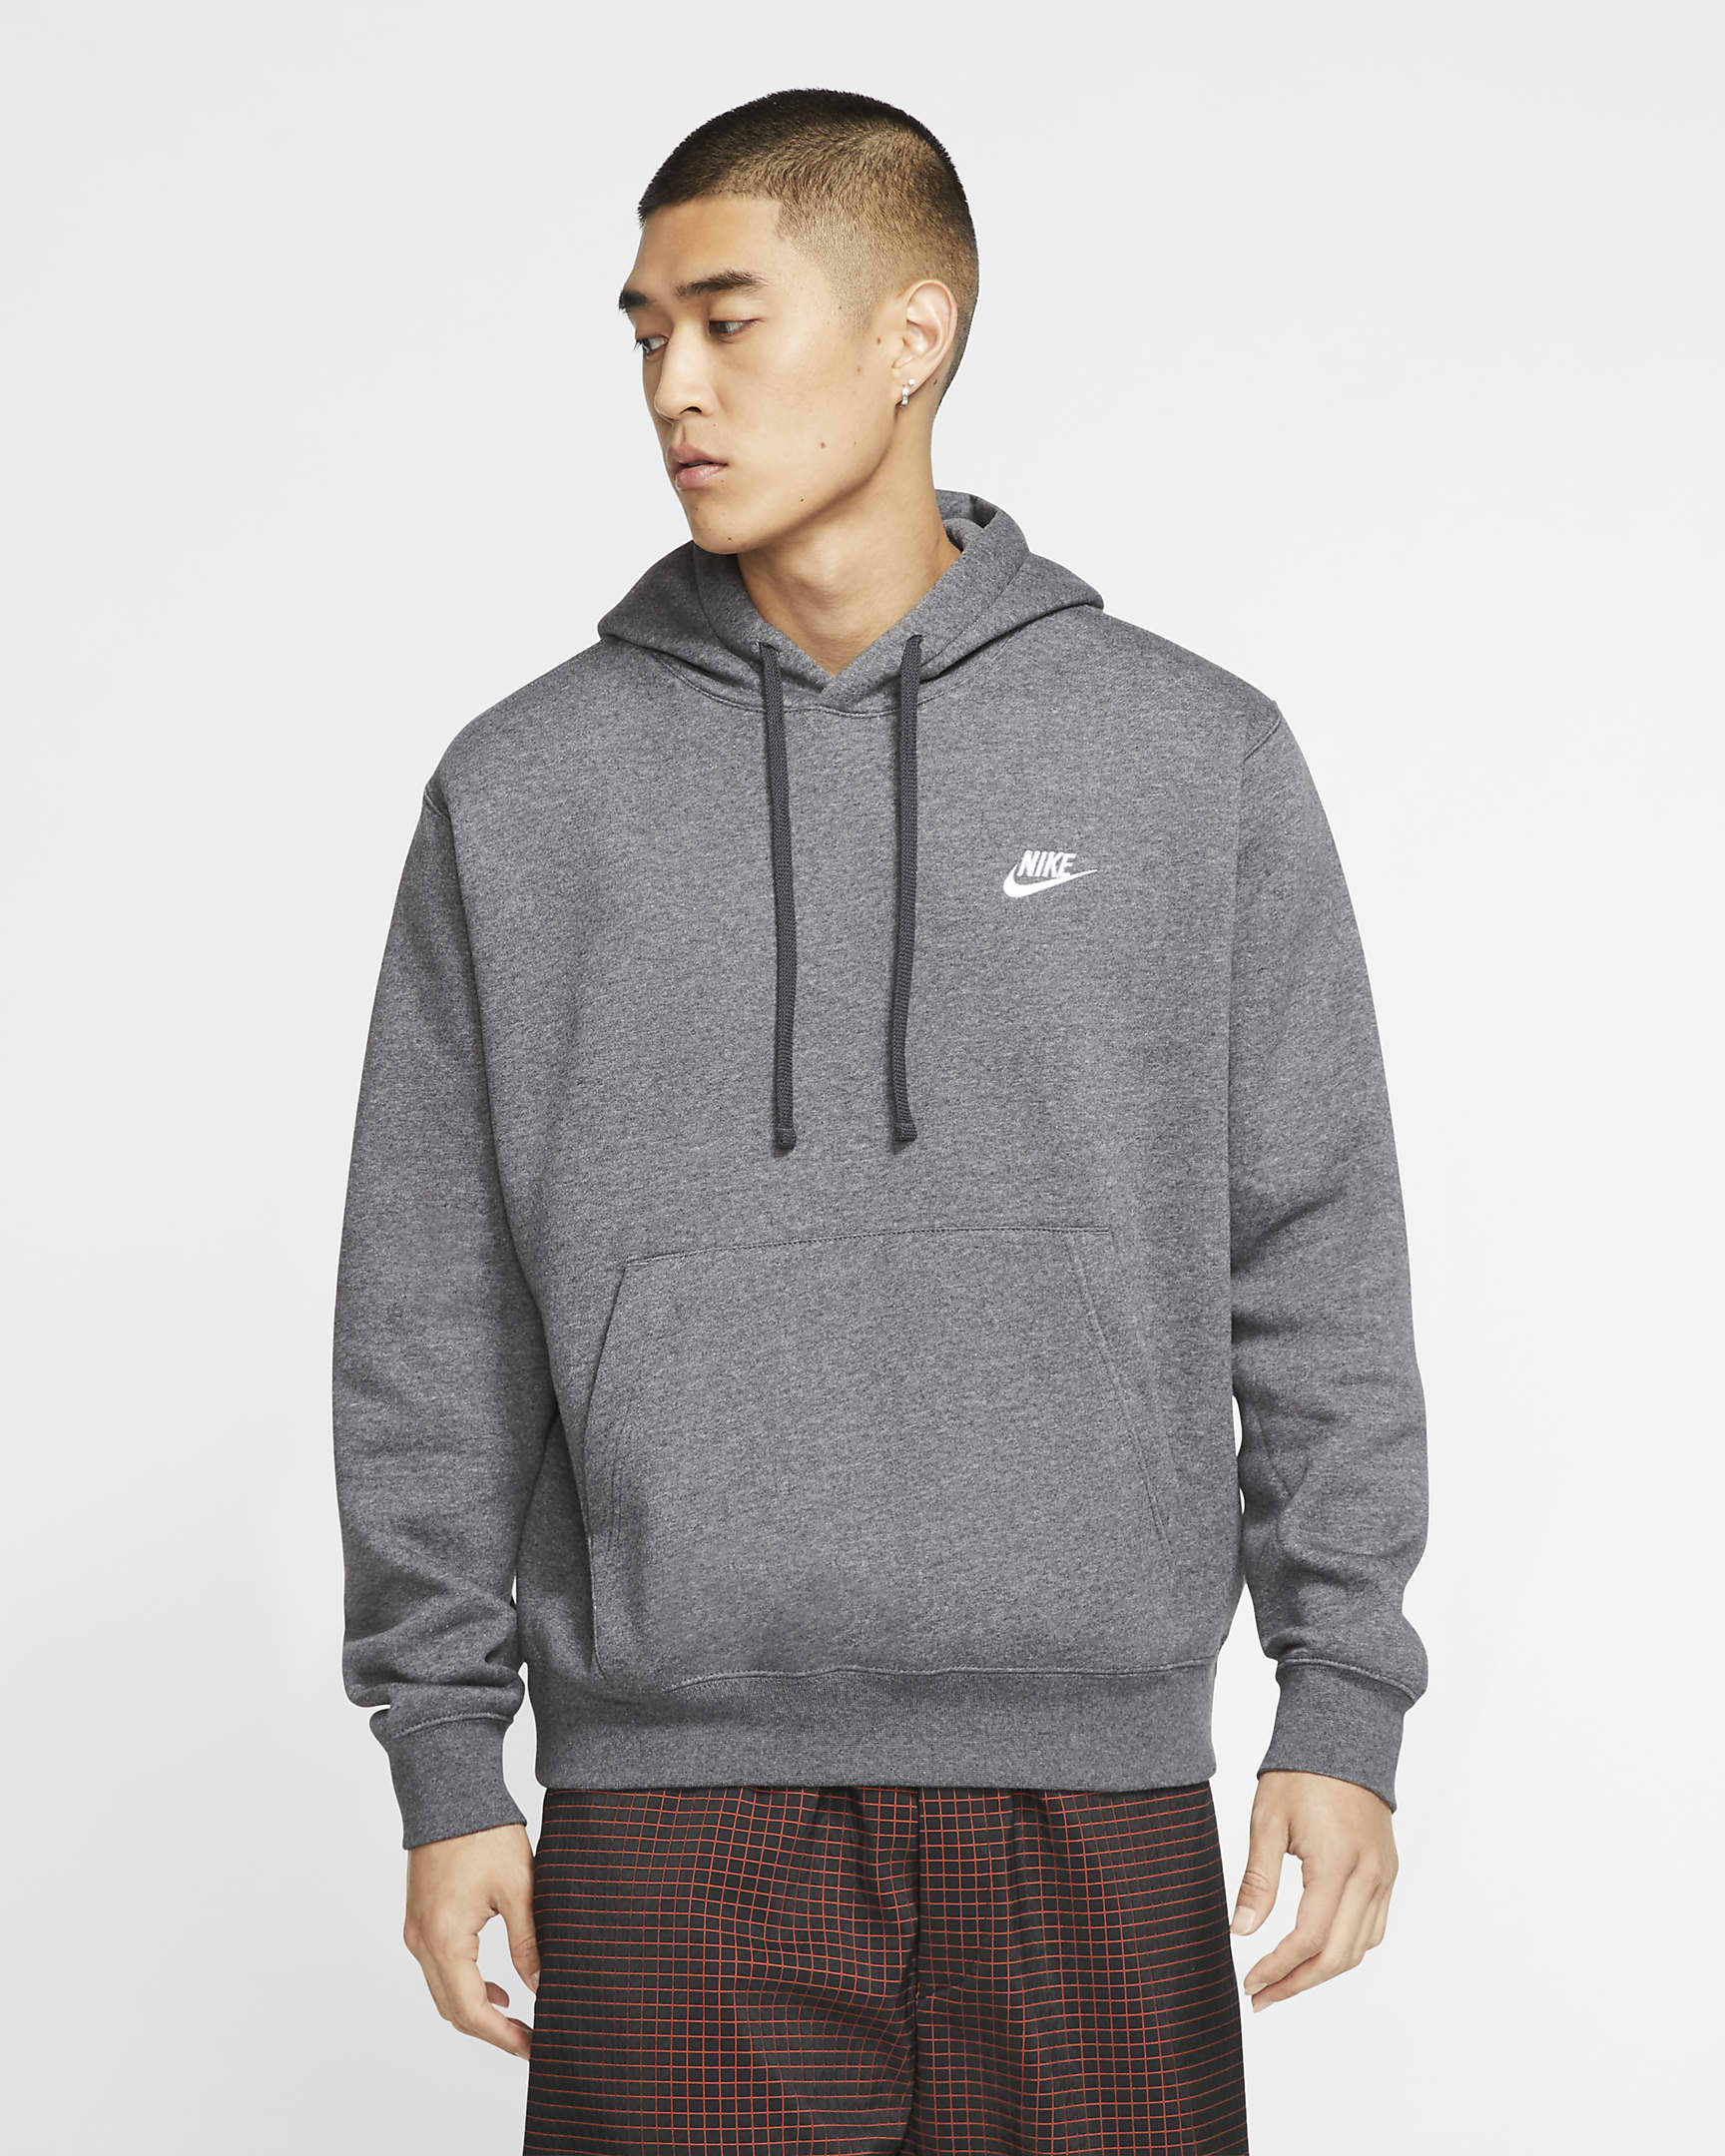 Nike hoodie grijs aanbieding korting